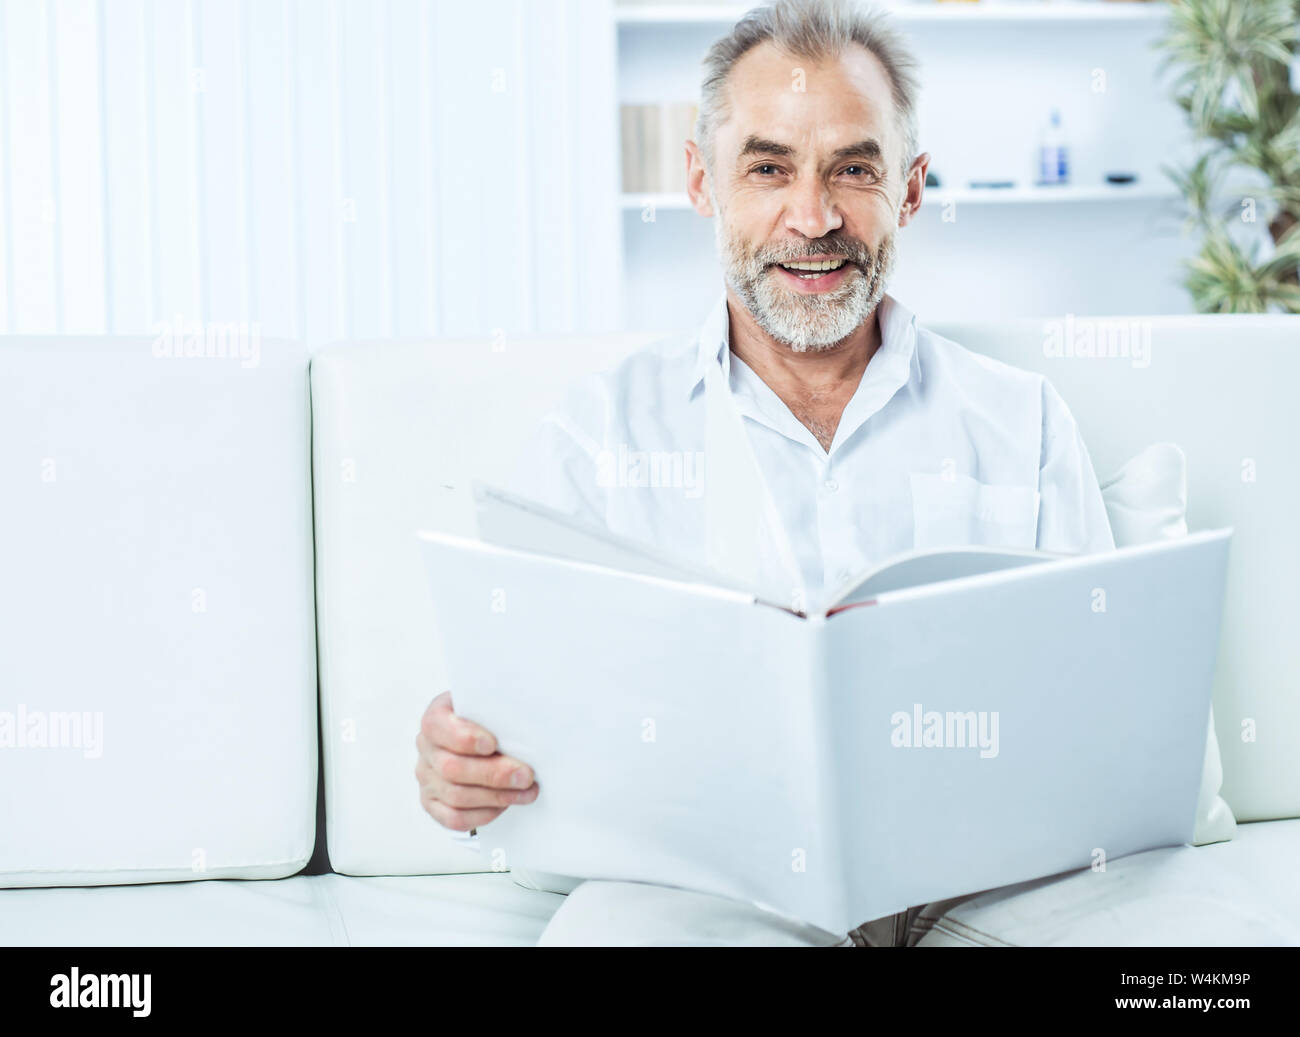 Businessman avec un magazine sitting on sofa in bright office. La photo a un espace vide pour votre texte Banque D'Images